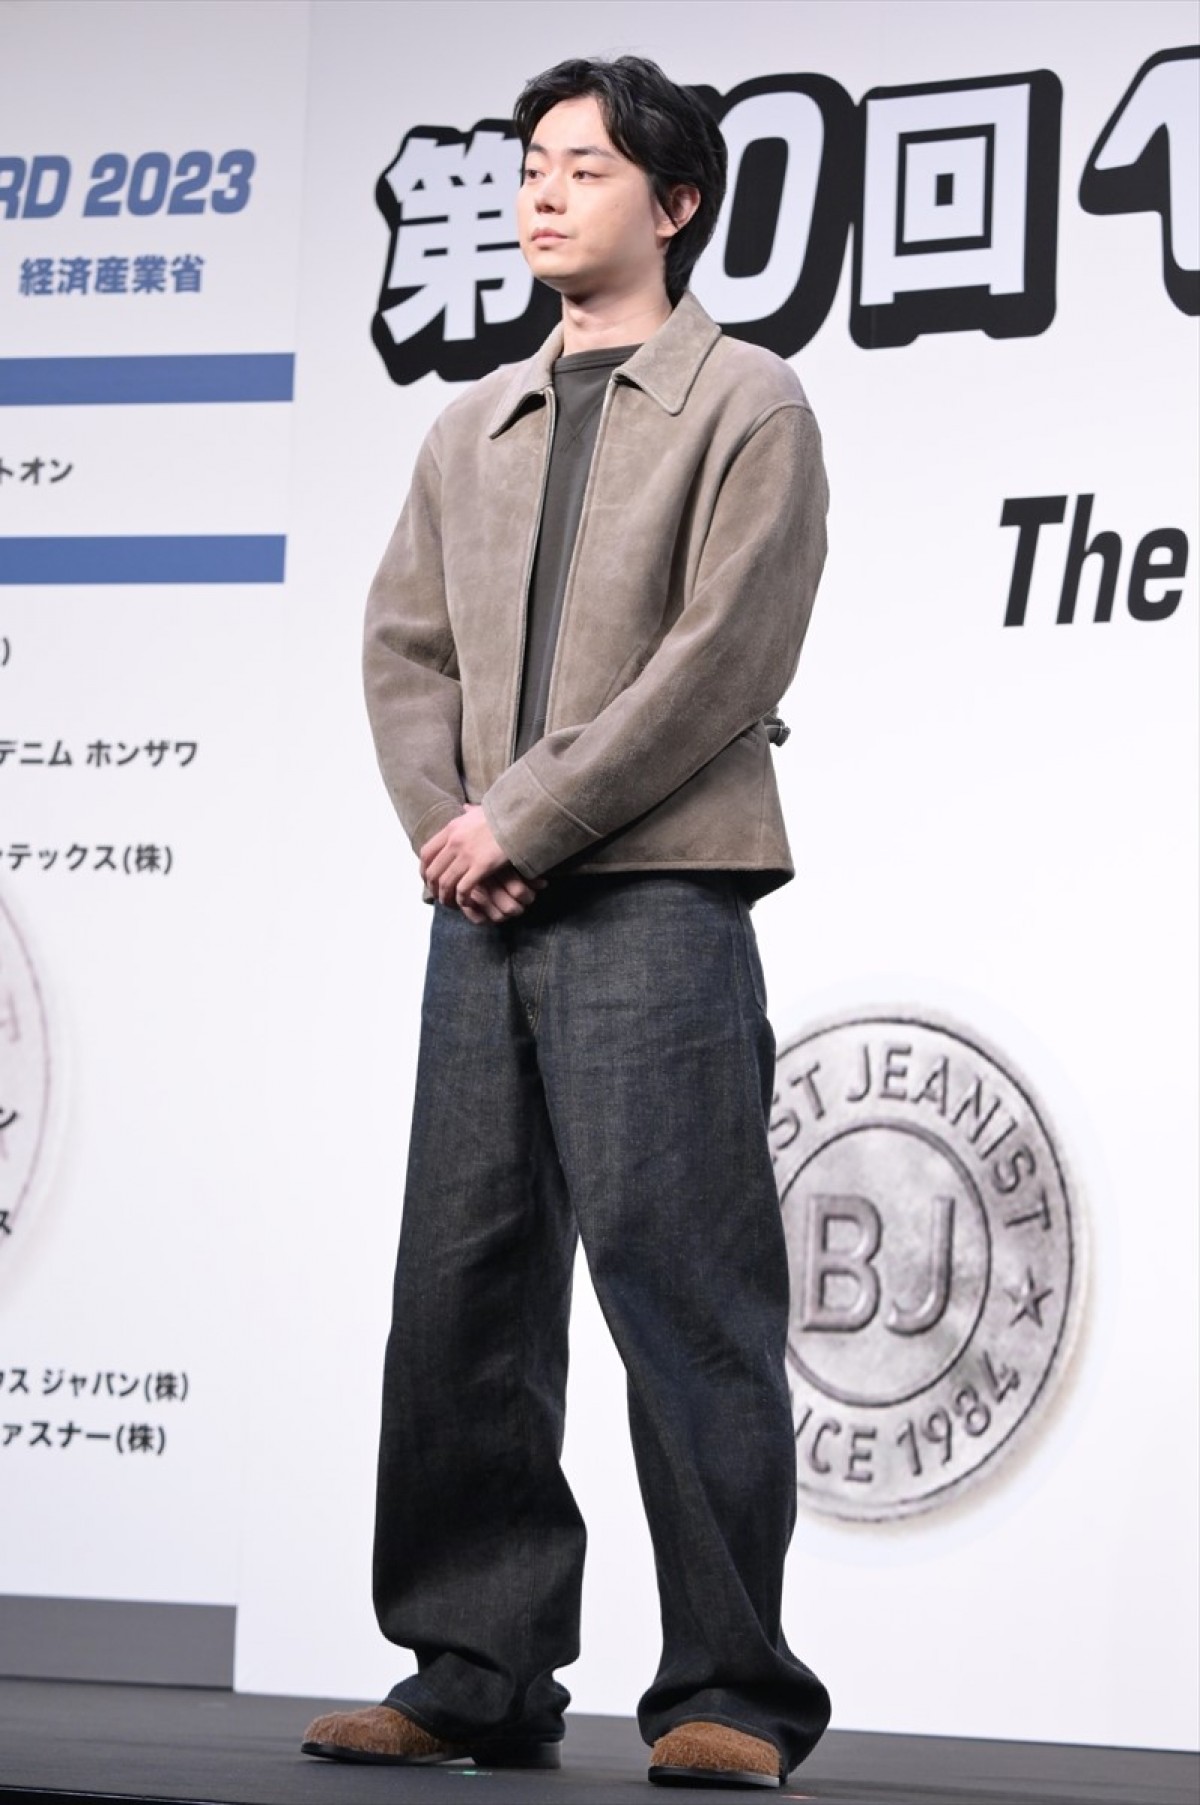 菅田将暉、2年連続のベストジーニスト受賞に喜び「もう一生選ばれないかなと」